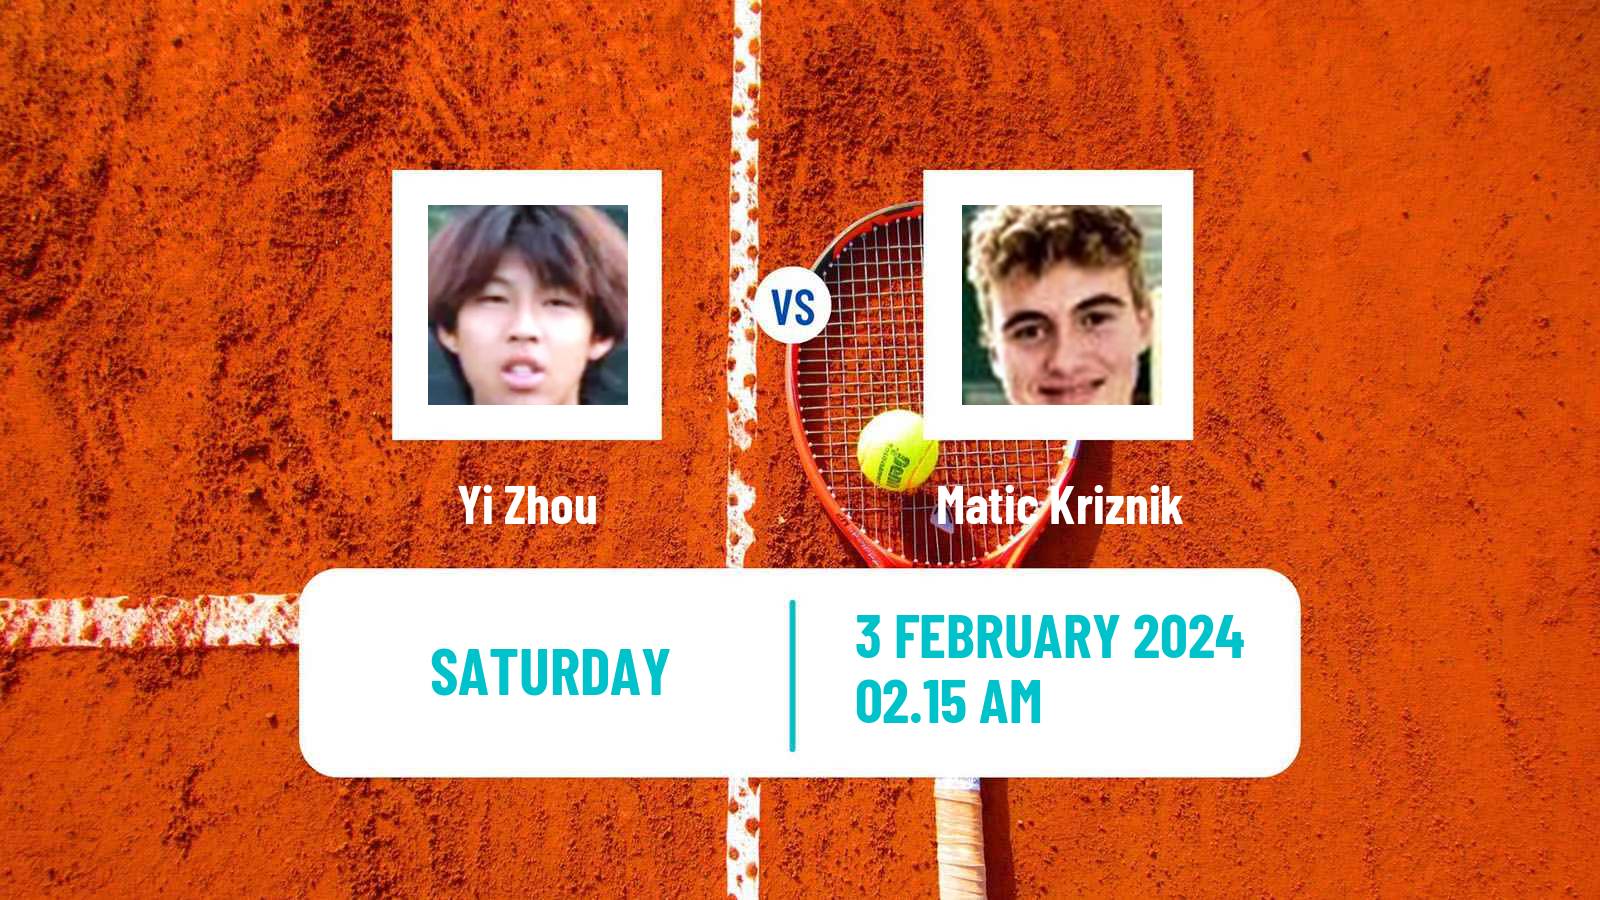 Tennis Davis Cup World Group II Yi Zhou - Matic Kriznik